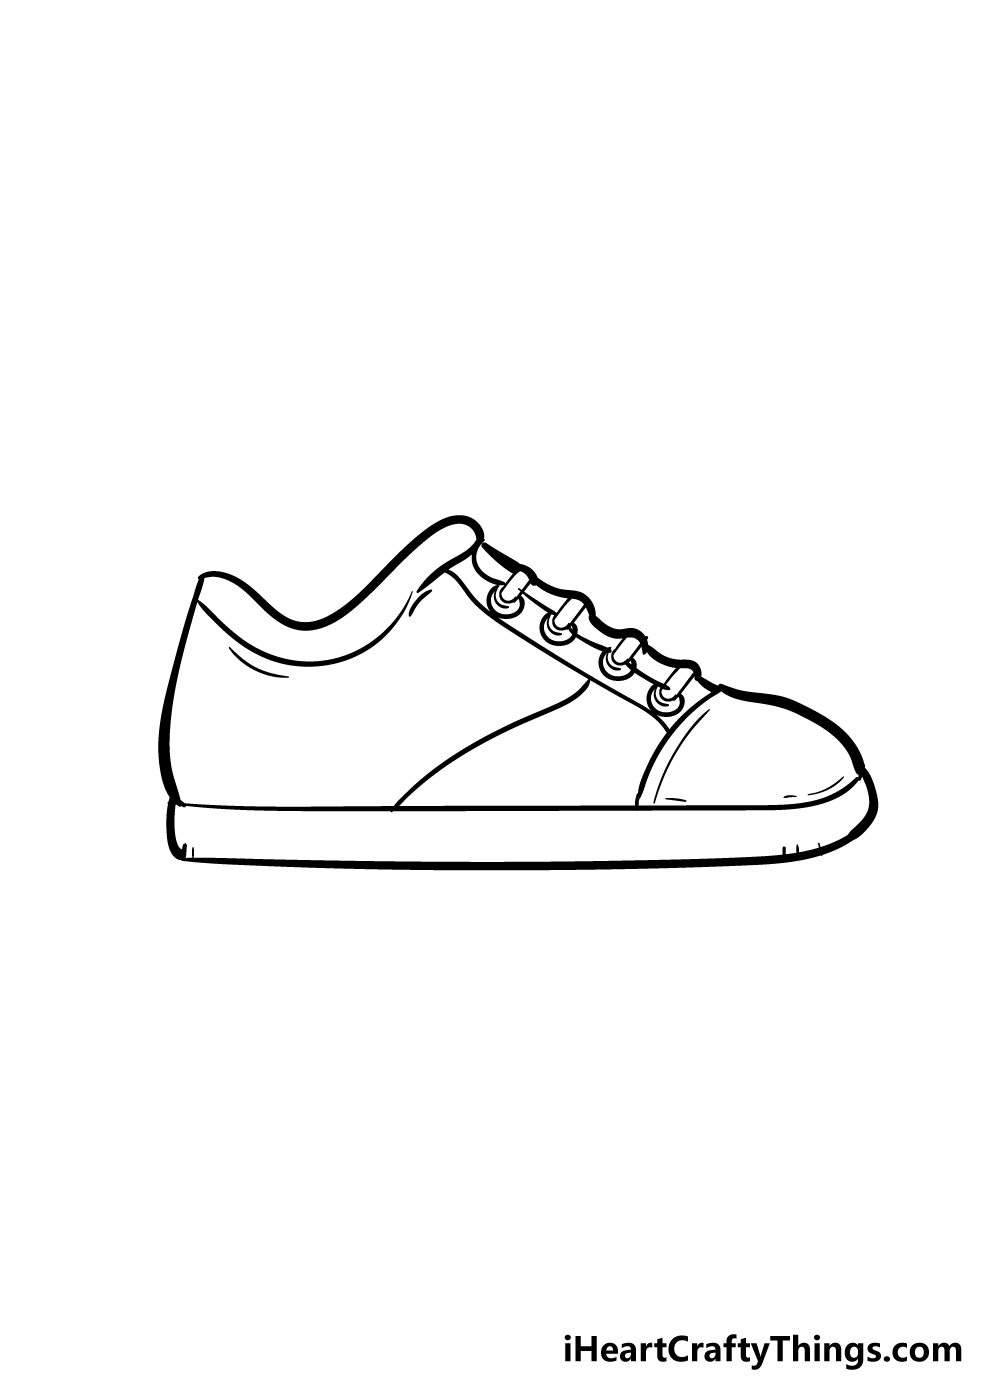 Shoes5 - Hướng dẫn Cách vẽ đôi giày đơn giản với 6 bước cơ bản